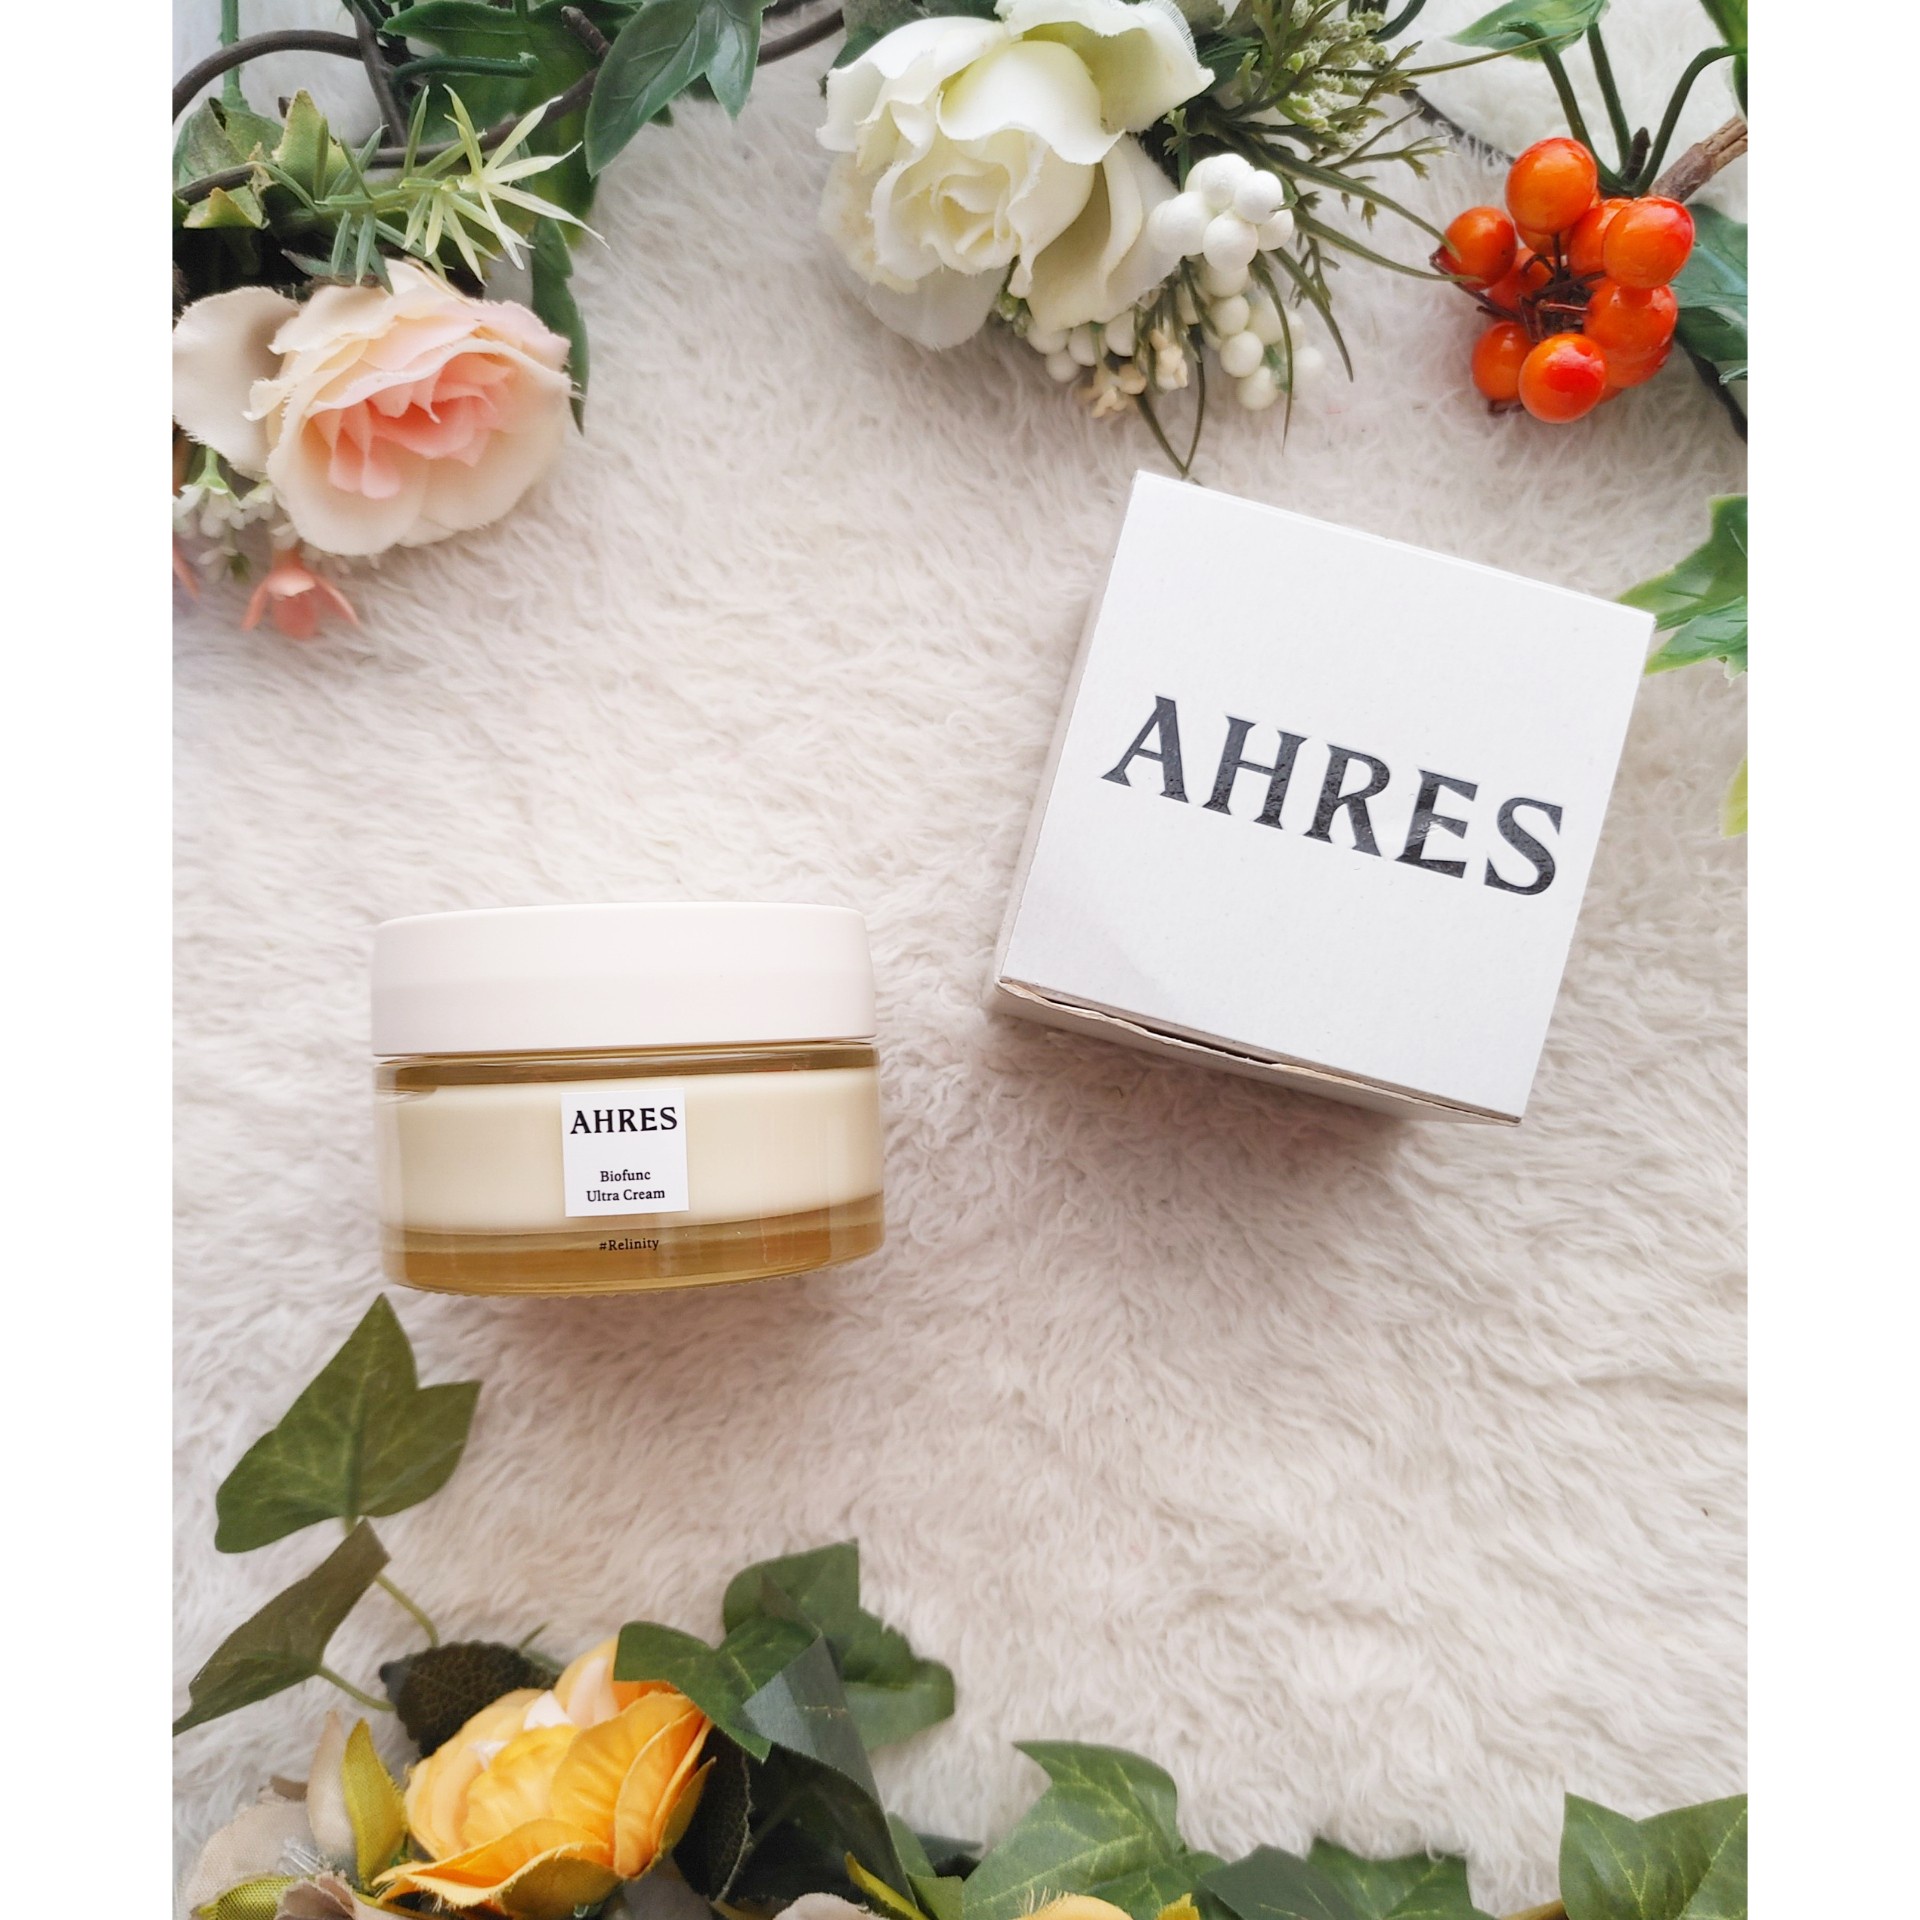 AHRES(アーレス) / バイオファンク ウルトラ クリーム 50gの公式商品